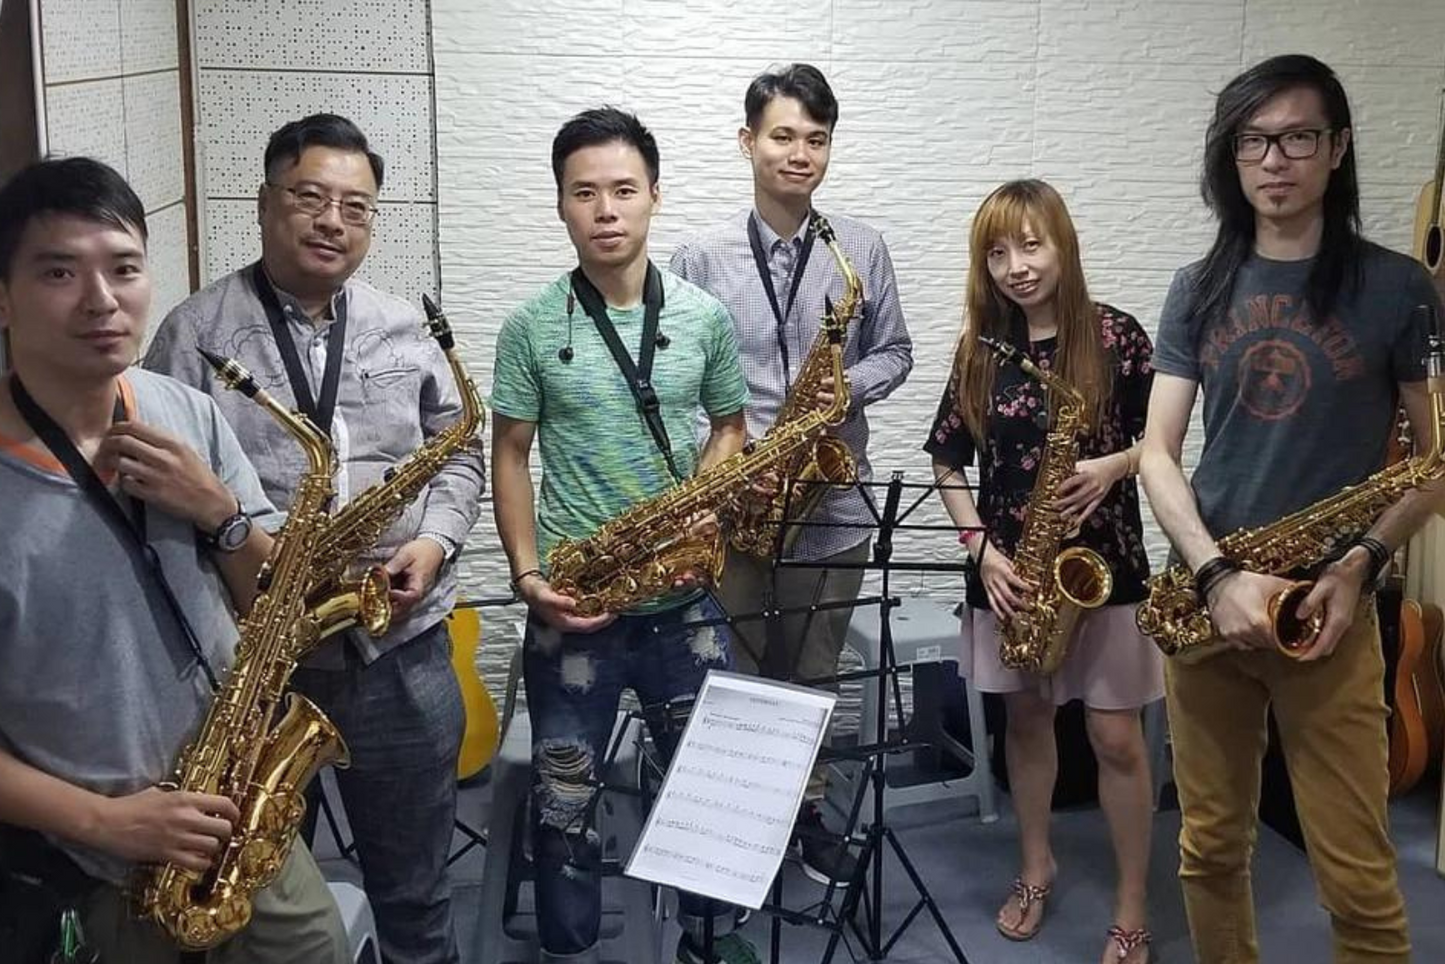 【色士風課程】Saxophone 學色士風教學班  (旺角總店)